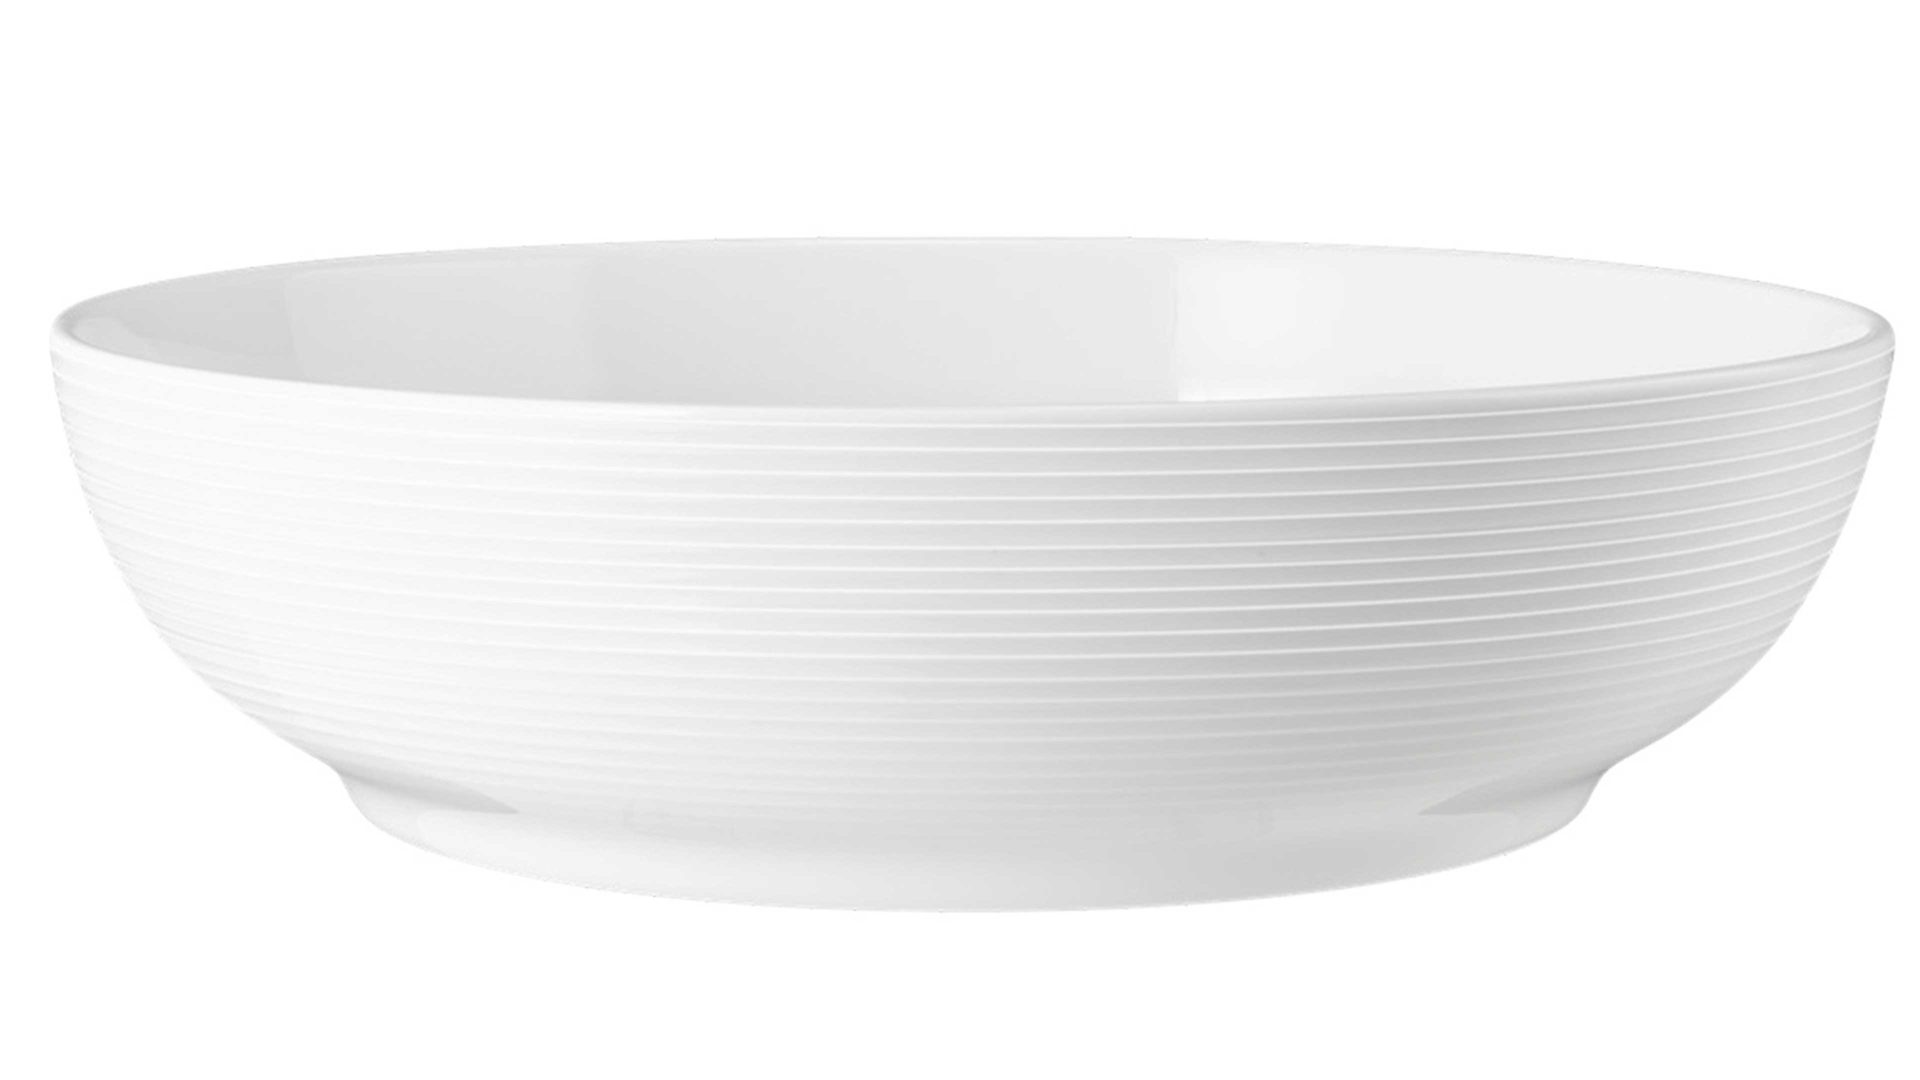 Schale Seltmann aus Porzellan in Weiß Seltmann Geschirrserie Beat 3 – Foodbowl weißes Porzellan – ca. 2350 ml